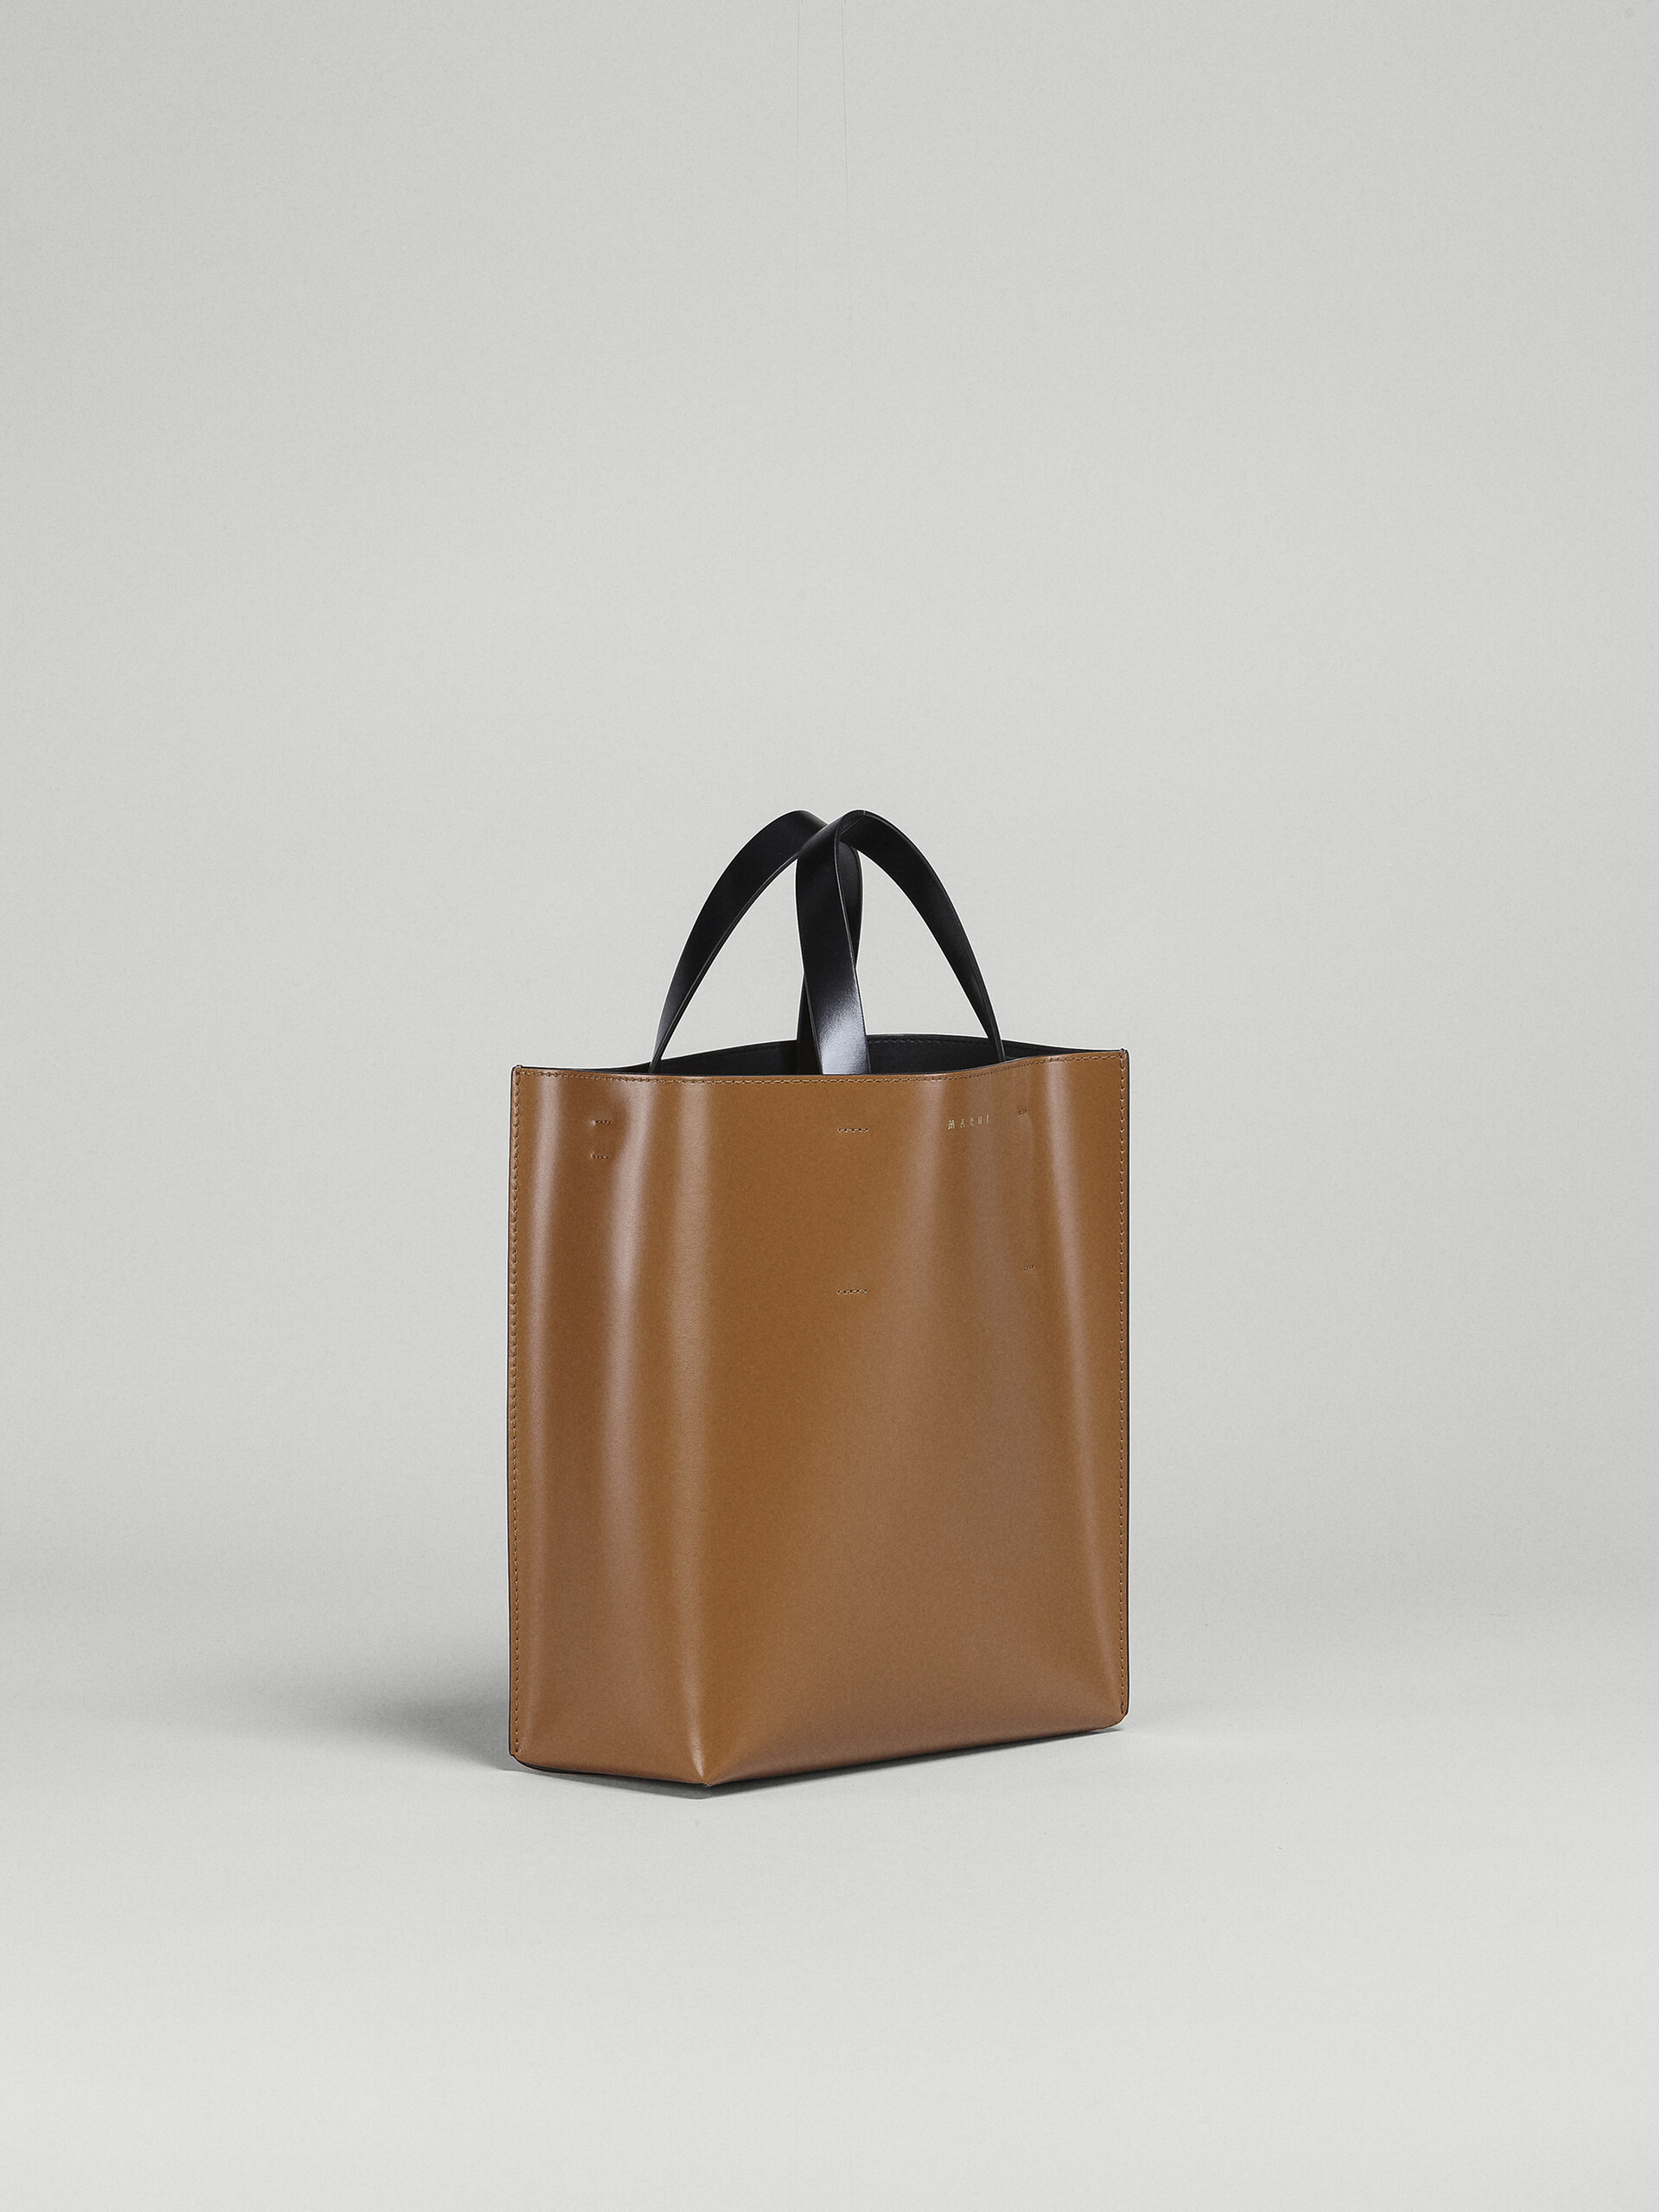 MUSEO bag piccola in pelle marrone e nera - Borse shopping - Image 6